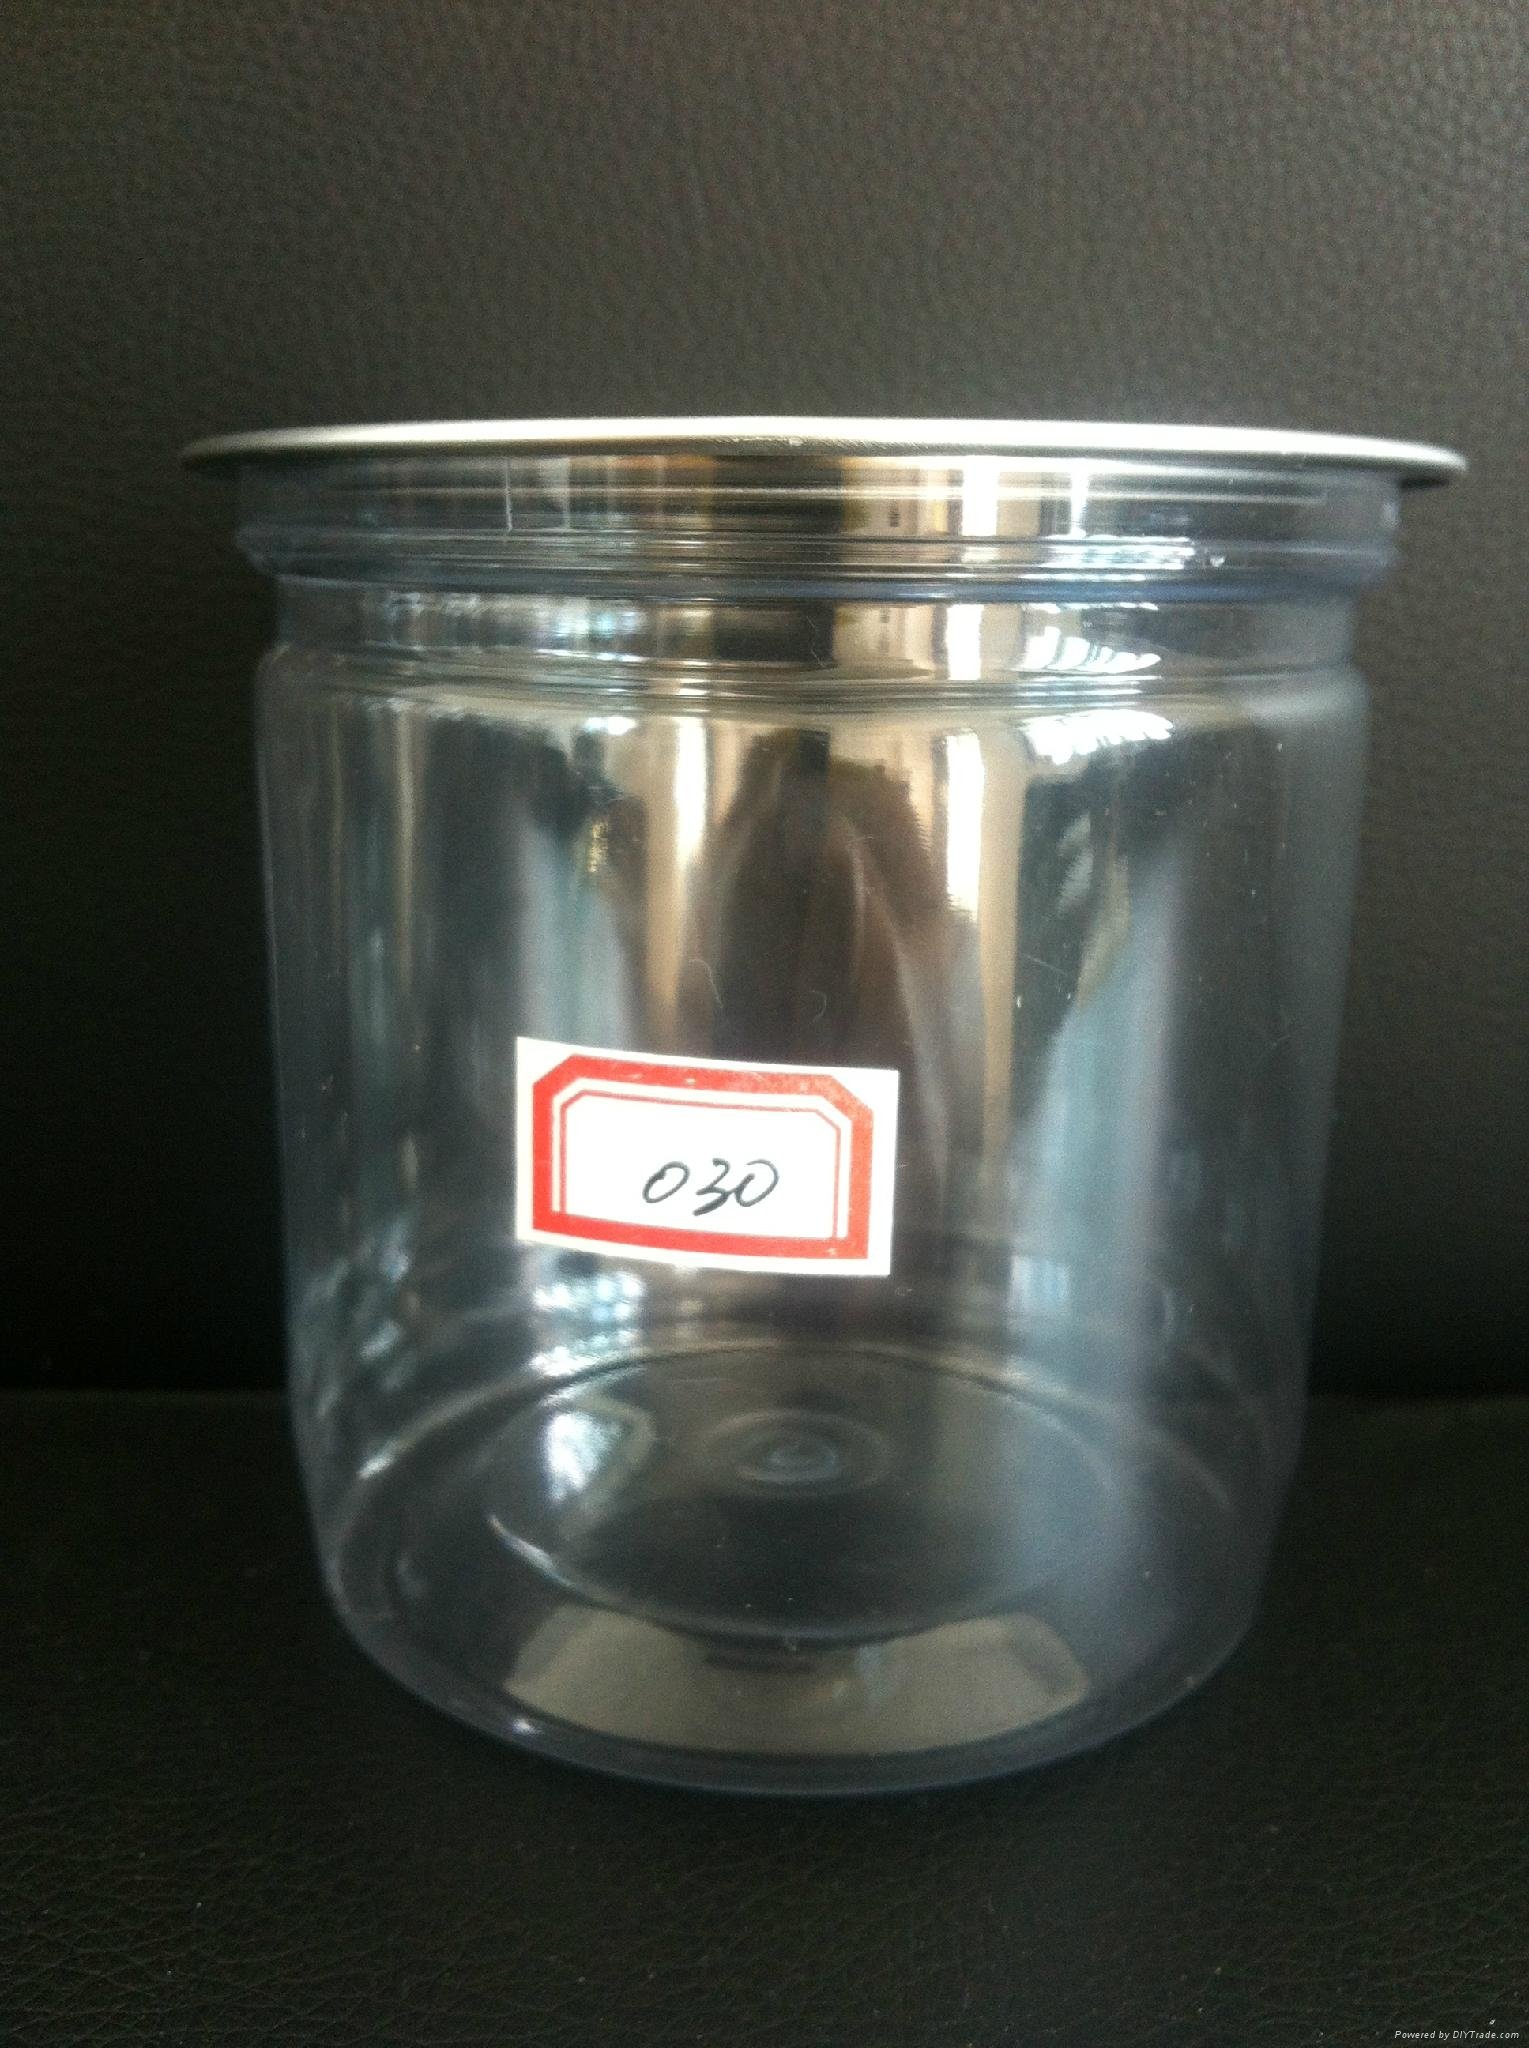  food cans Aluminum foil tear food cans Transparent jar jar 2